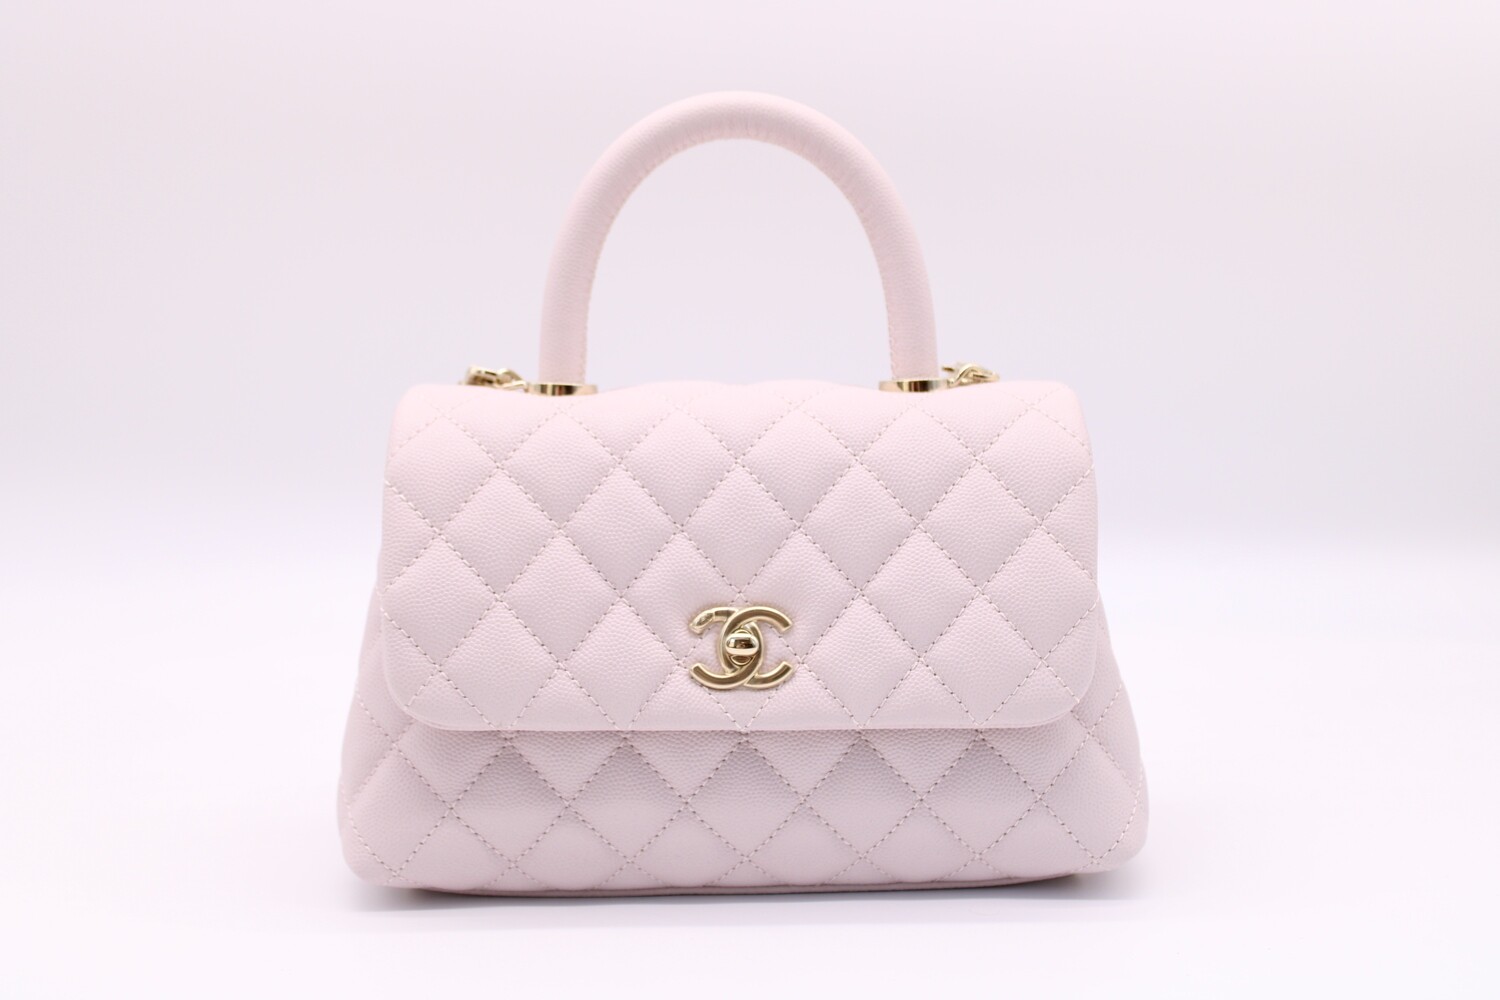 Chanel Coco Handle Small, Lilac Caviar Leather, Gold Hardware, New in Box  MA001 - Julia Rose Boston